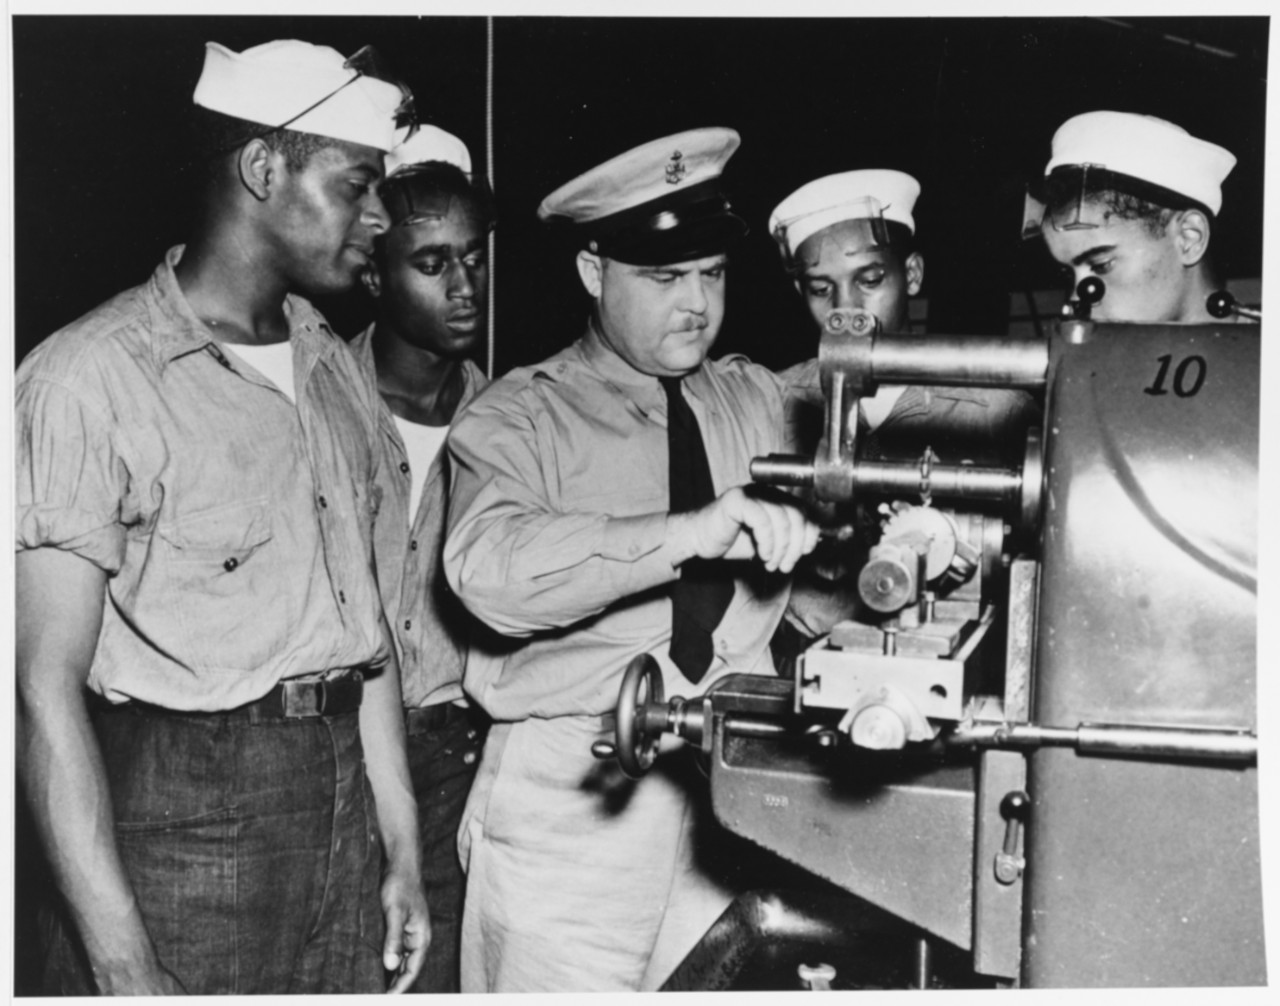 Three Black men in naval work uniforms watch a white man in khaki uniform working on machinery.